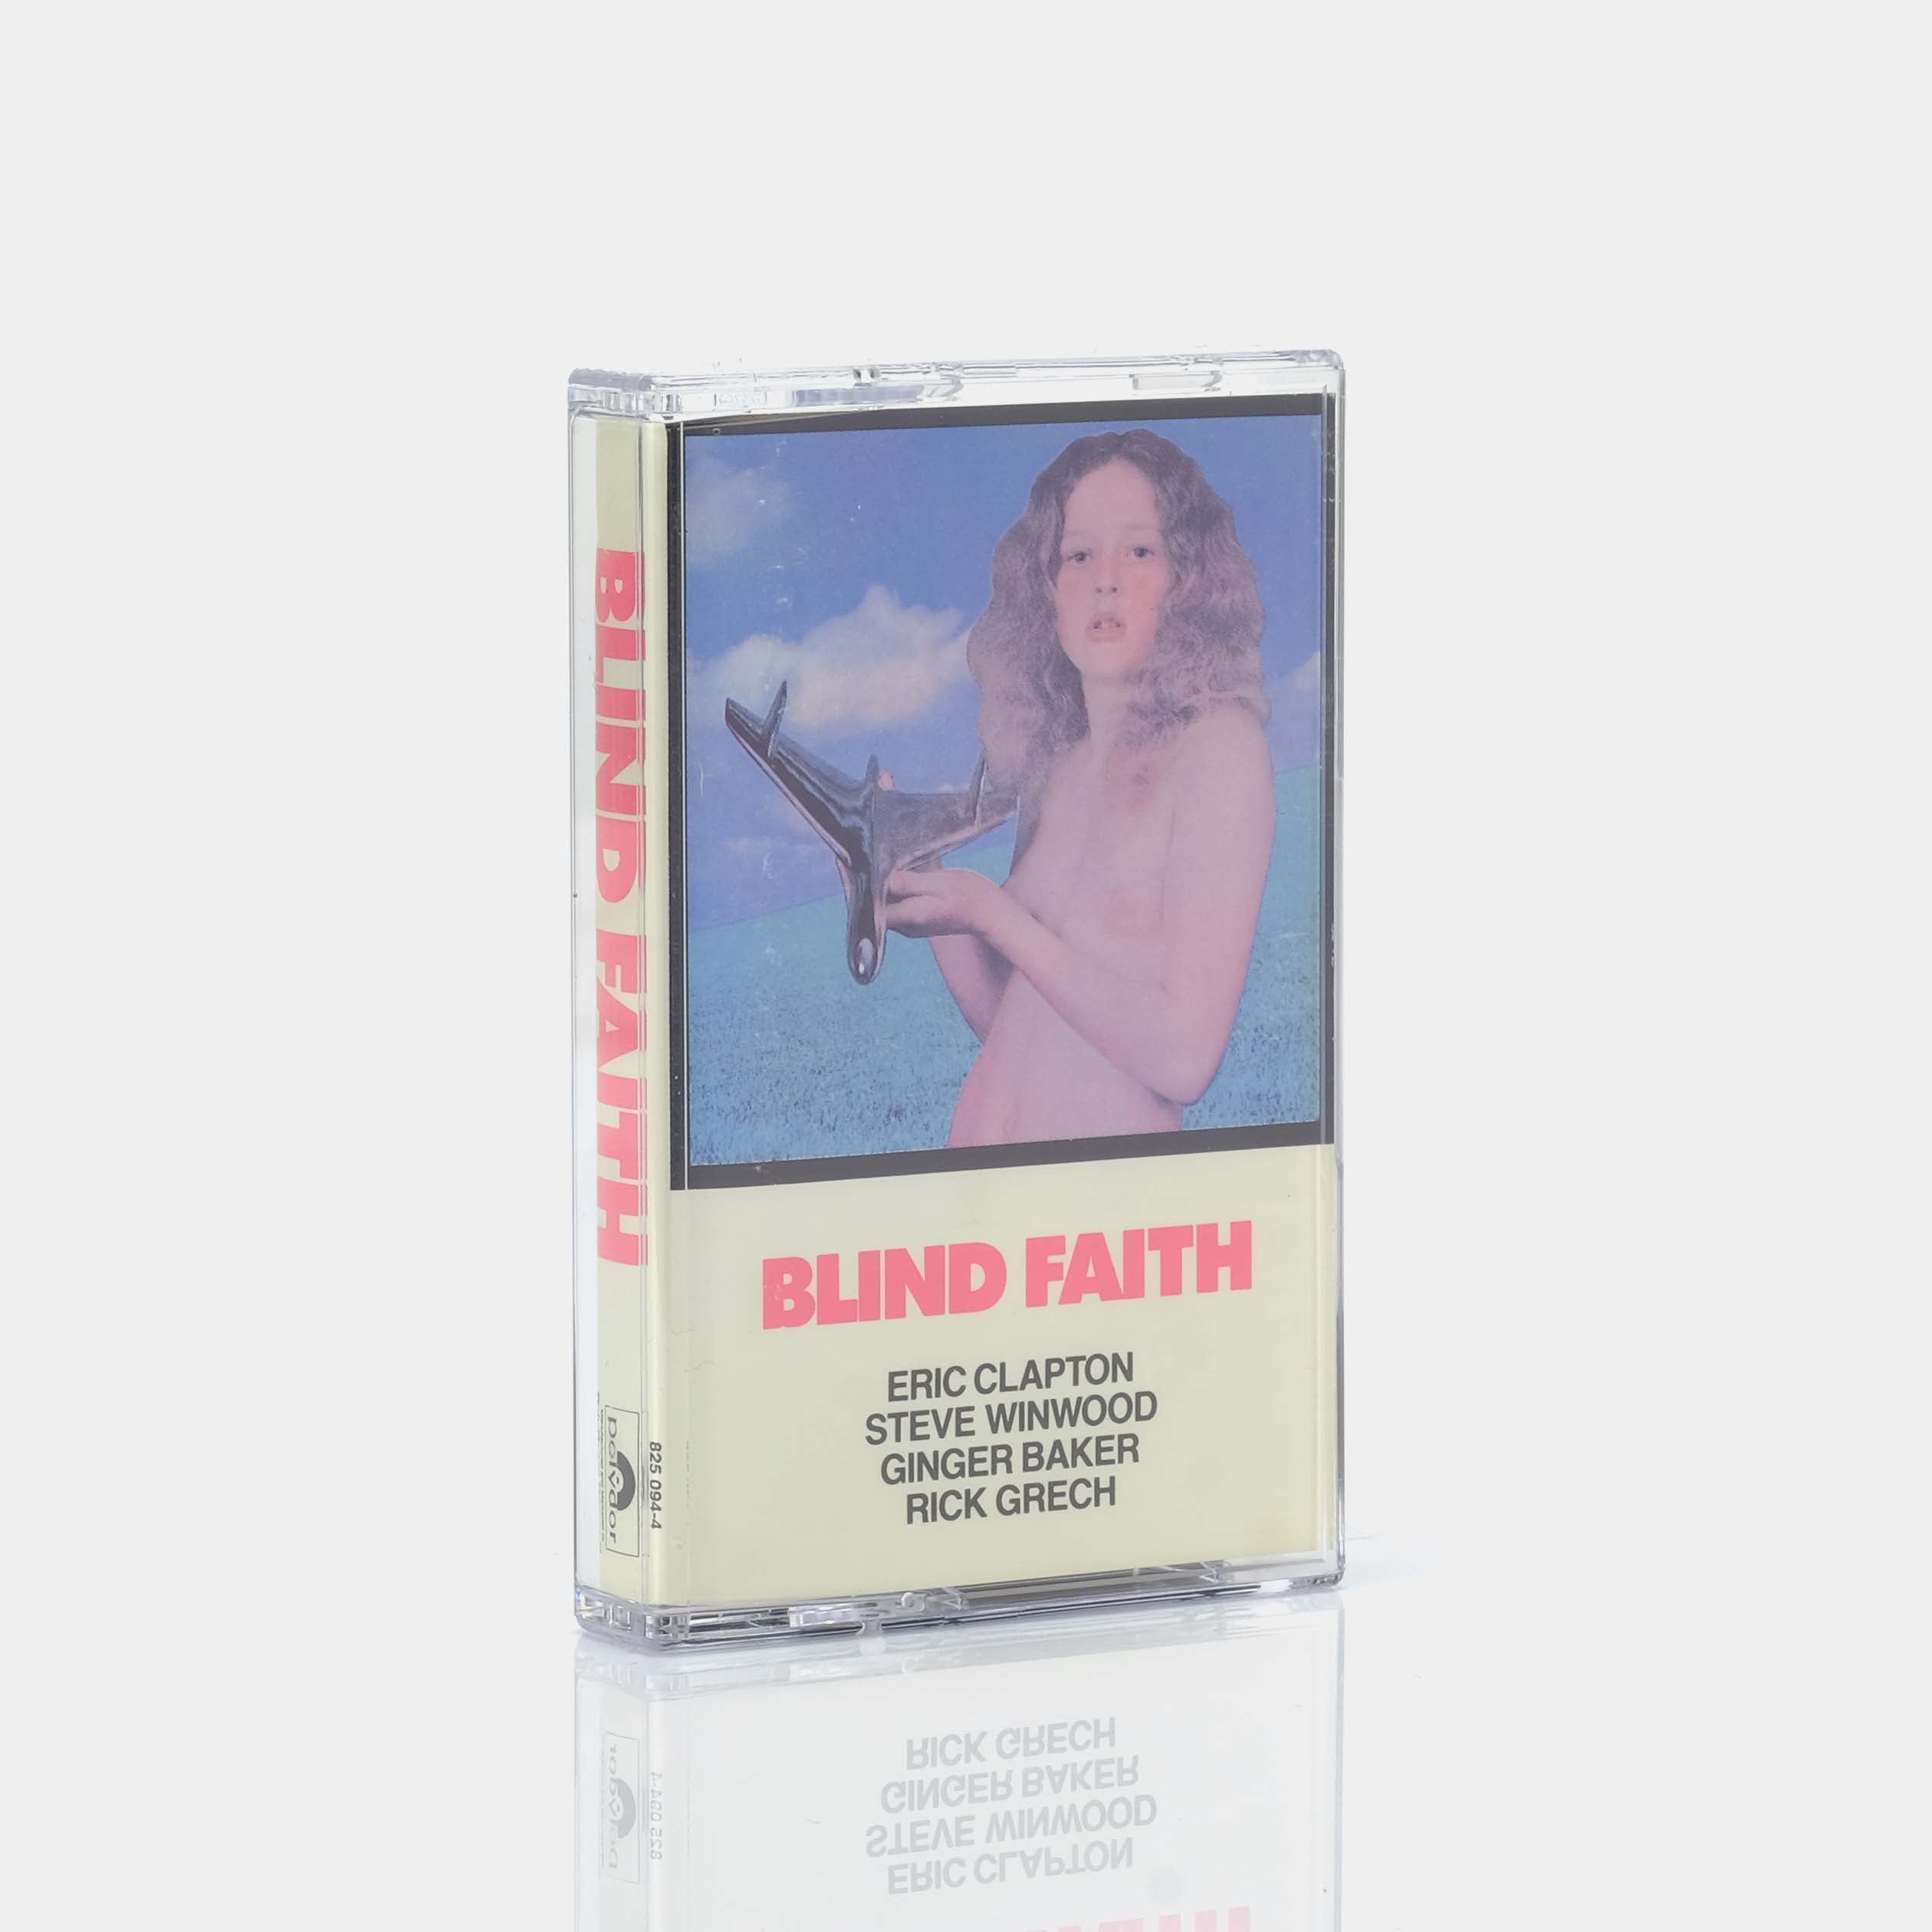 Blind Faith - Blind Faith Cassette Tape